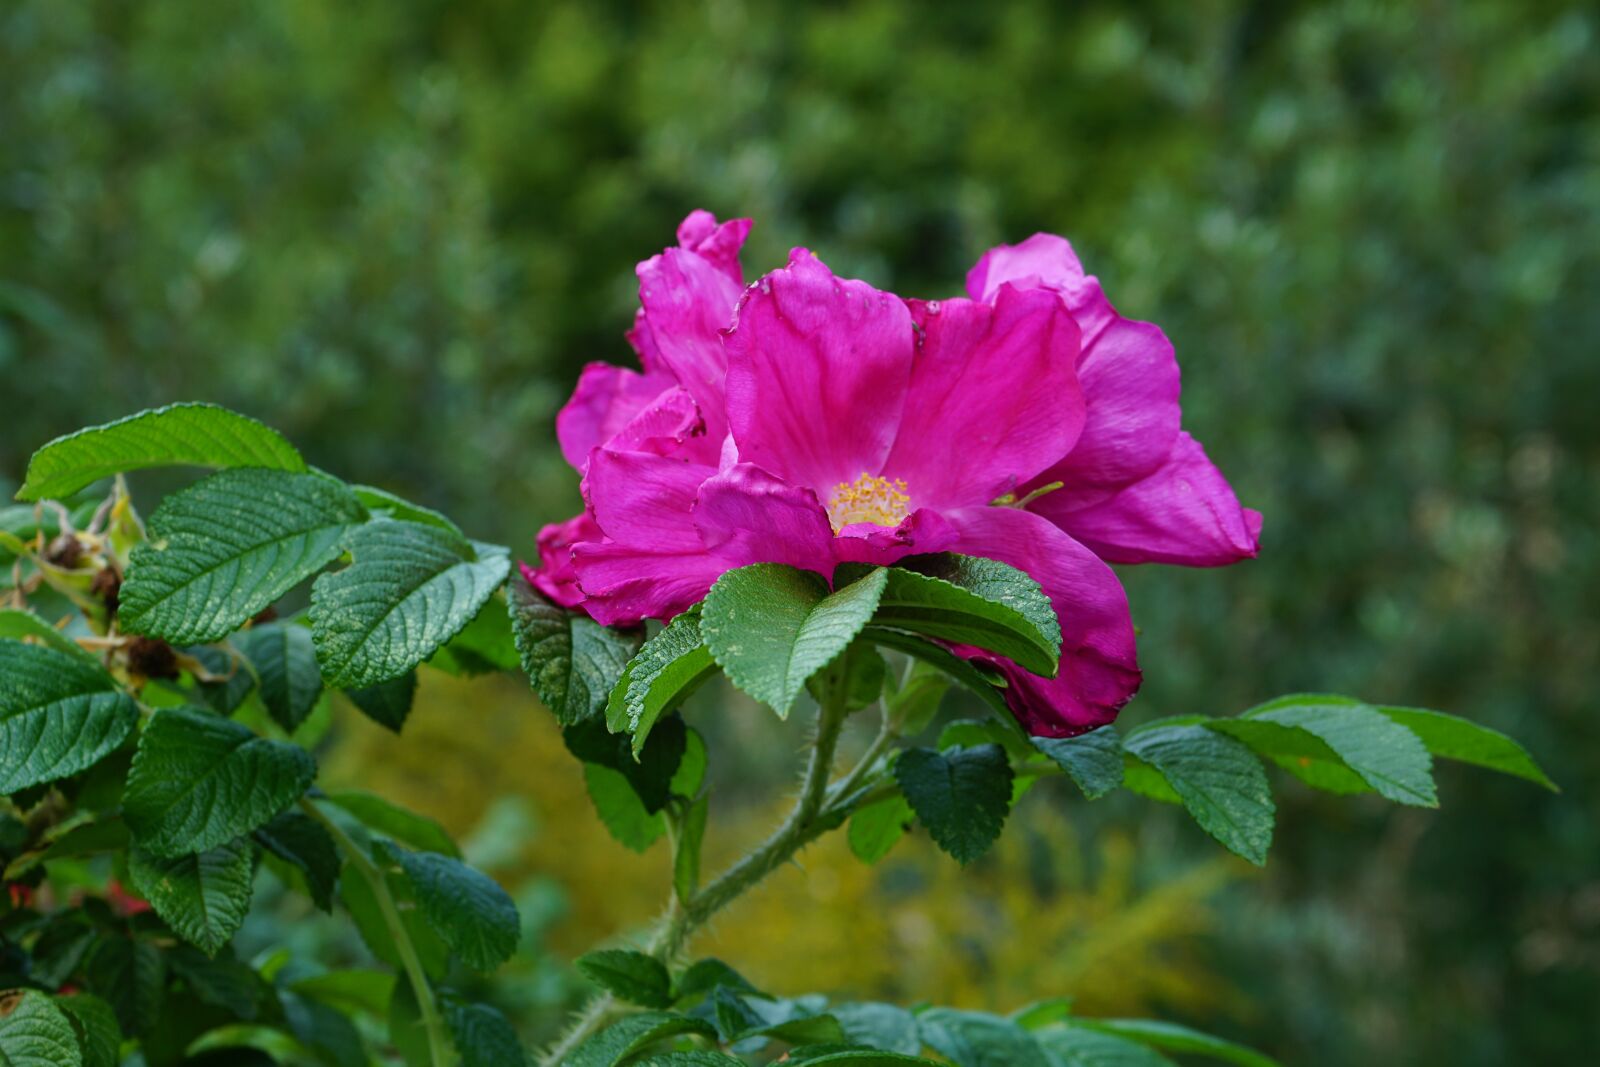 Sony FE 28-70mm F3.5-5.6 OSS sample photo. Flower, shrub, rose hip photography